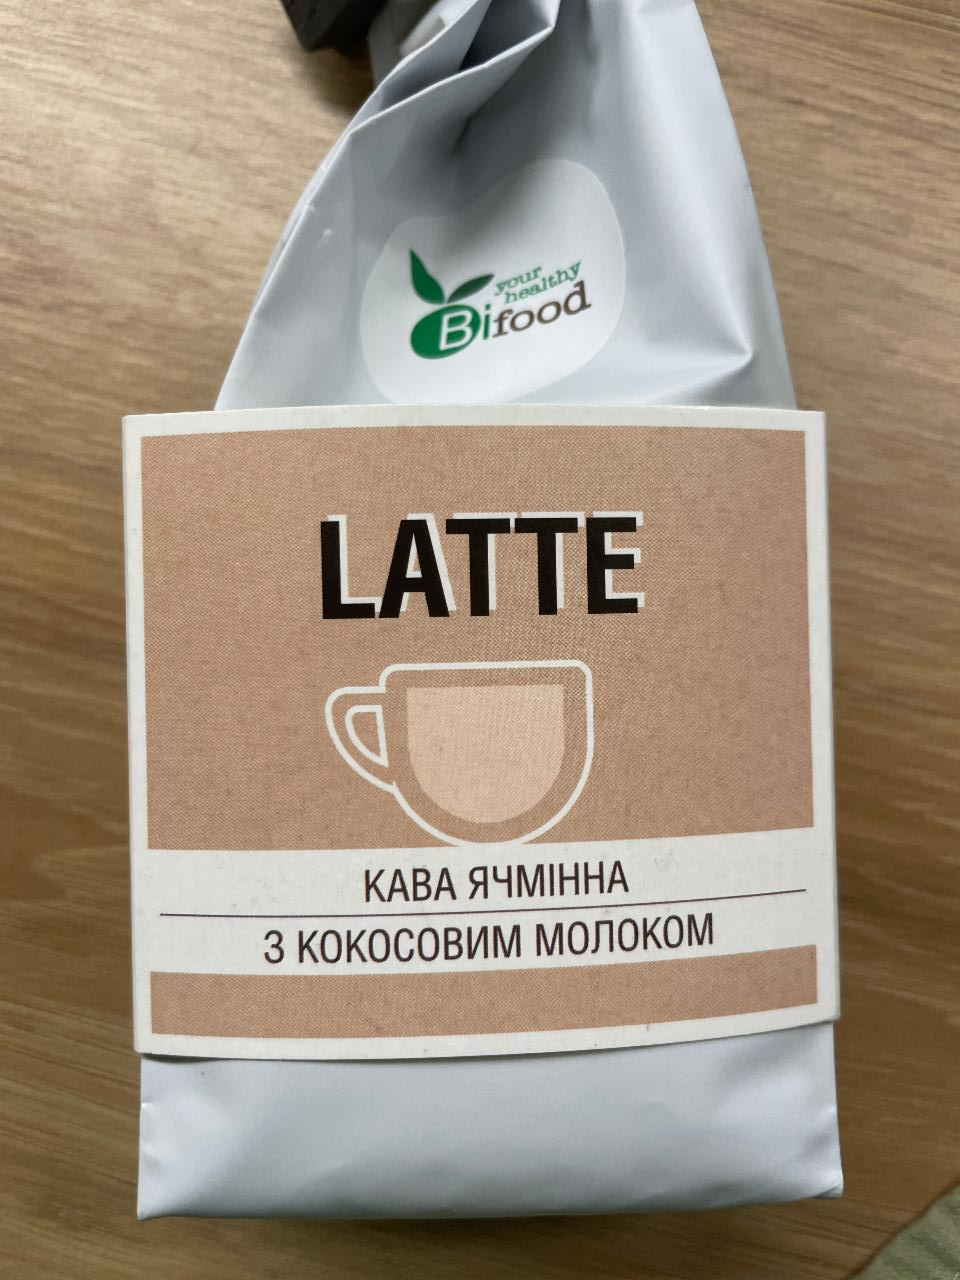 Фото - Кофе ячменный с кокосовым молоком Latte Biofood